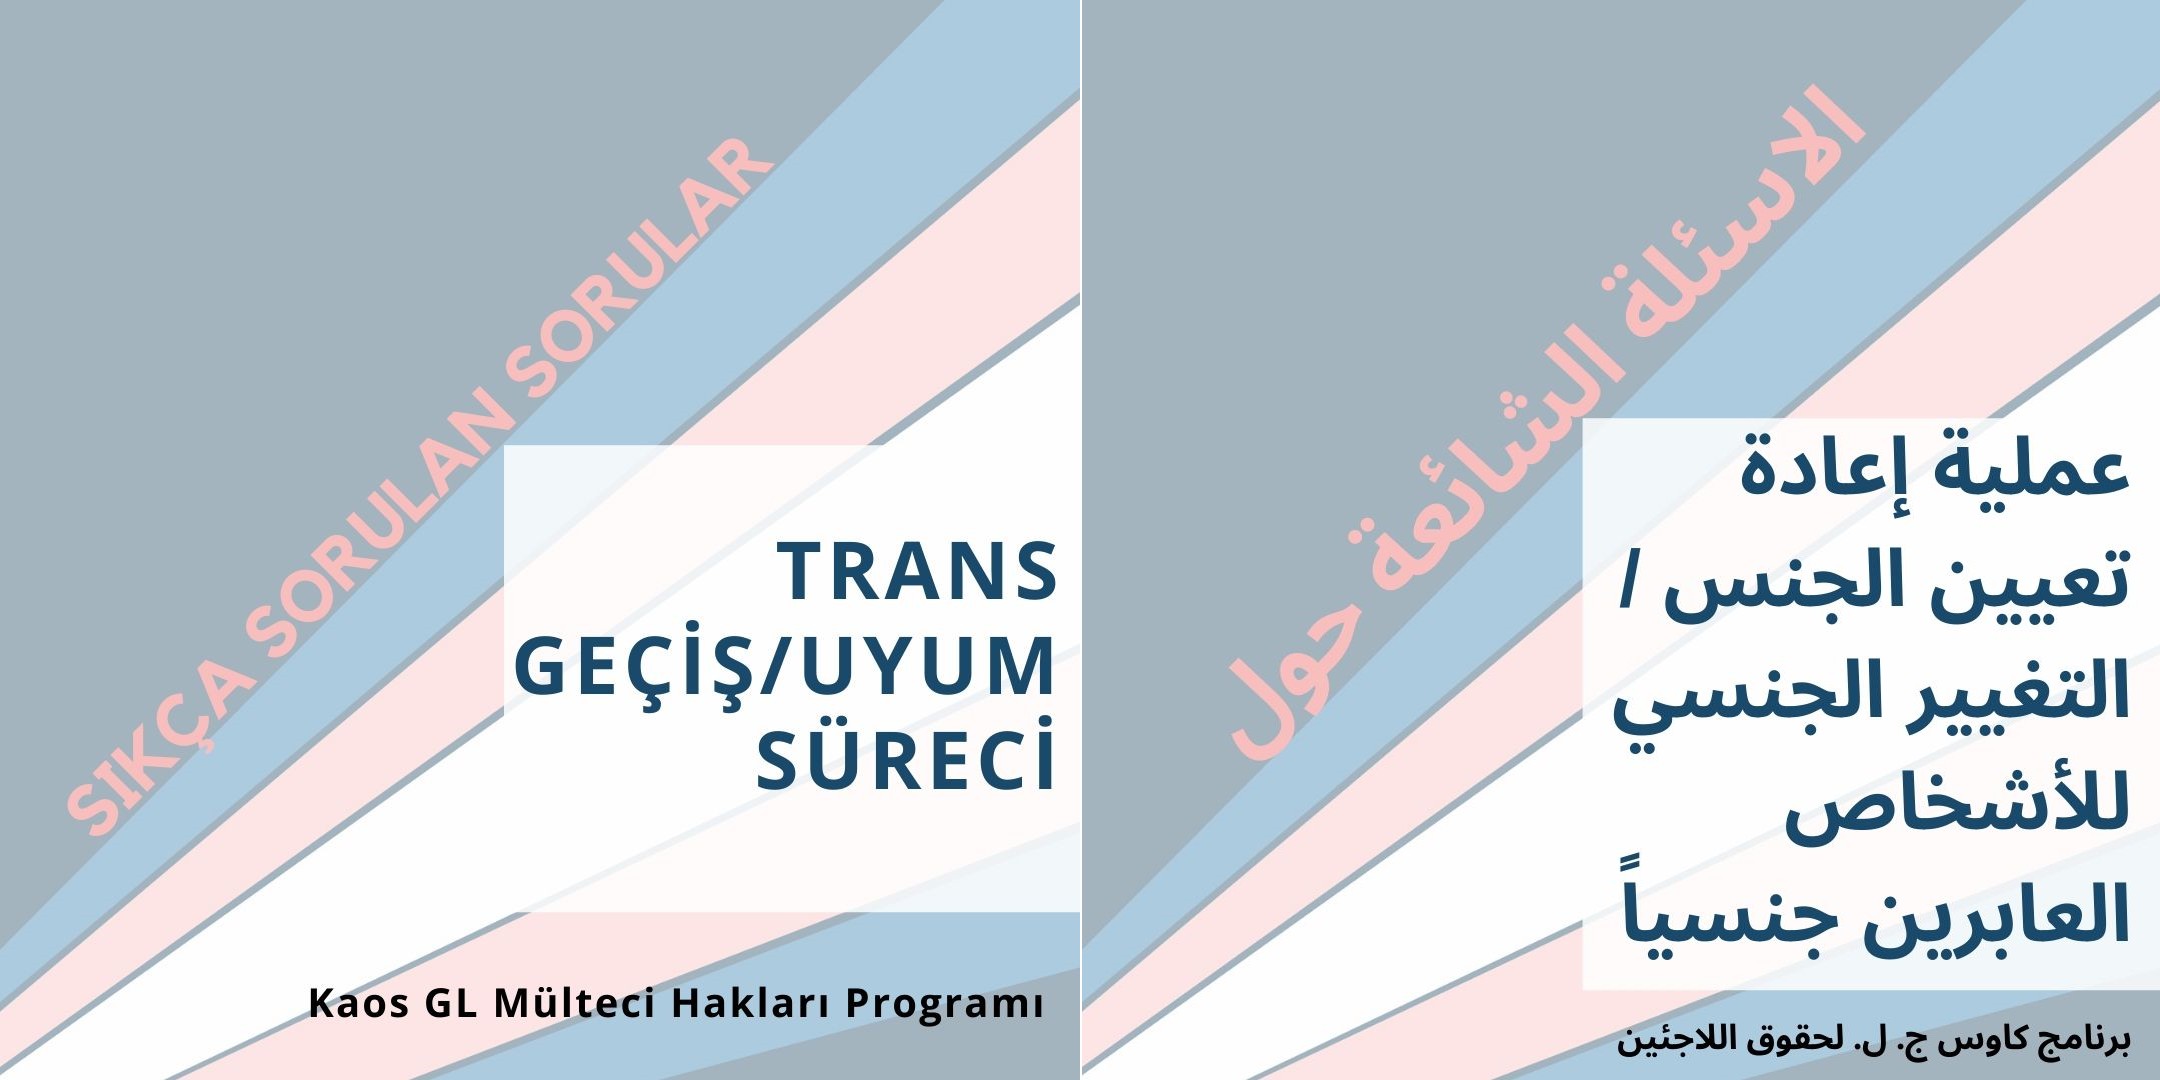 Trans Geçiş / Uyum Süreci (Arapça) | Kaos GL - LGBTİ+ Haber Portalı Haber